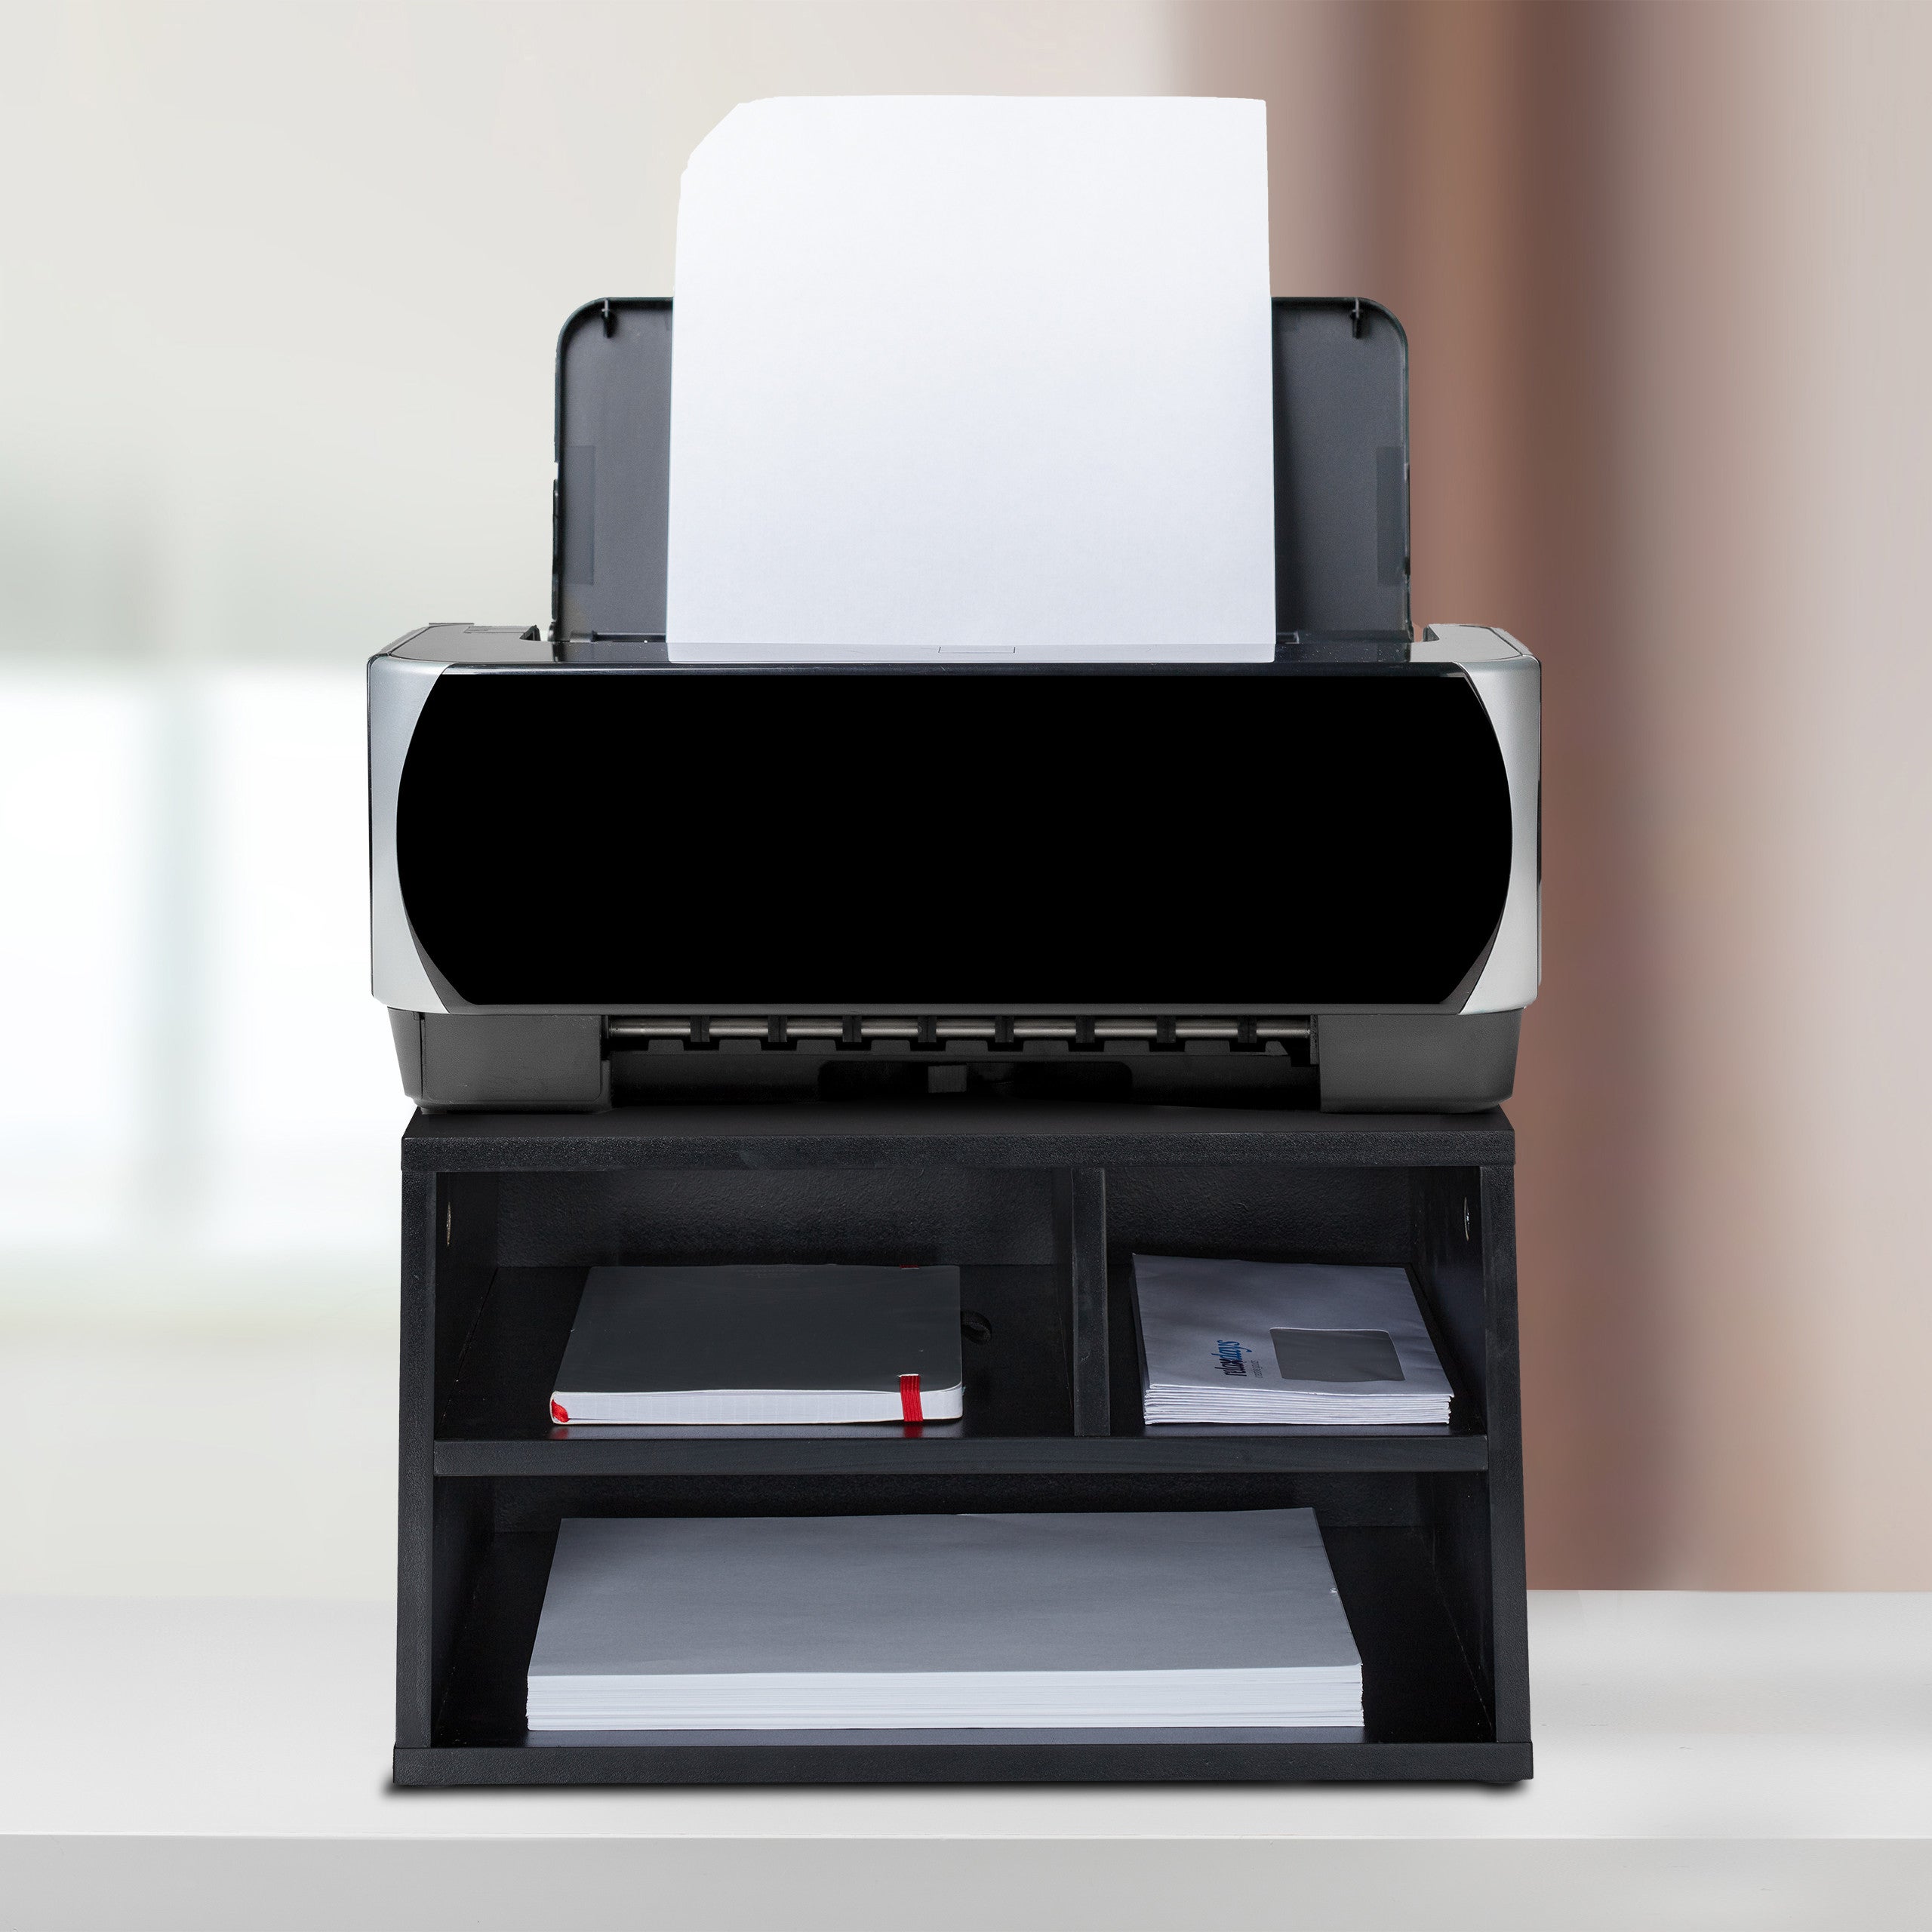 Supporti per Stampante Facile da spostare supporto della stampante Super portante supporto stampante scrivania sotto la scrivania Stampante Stand con 4 ruote for stampante 3D Mini Organizzatore di for 